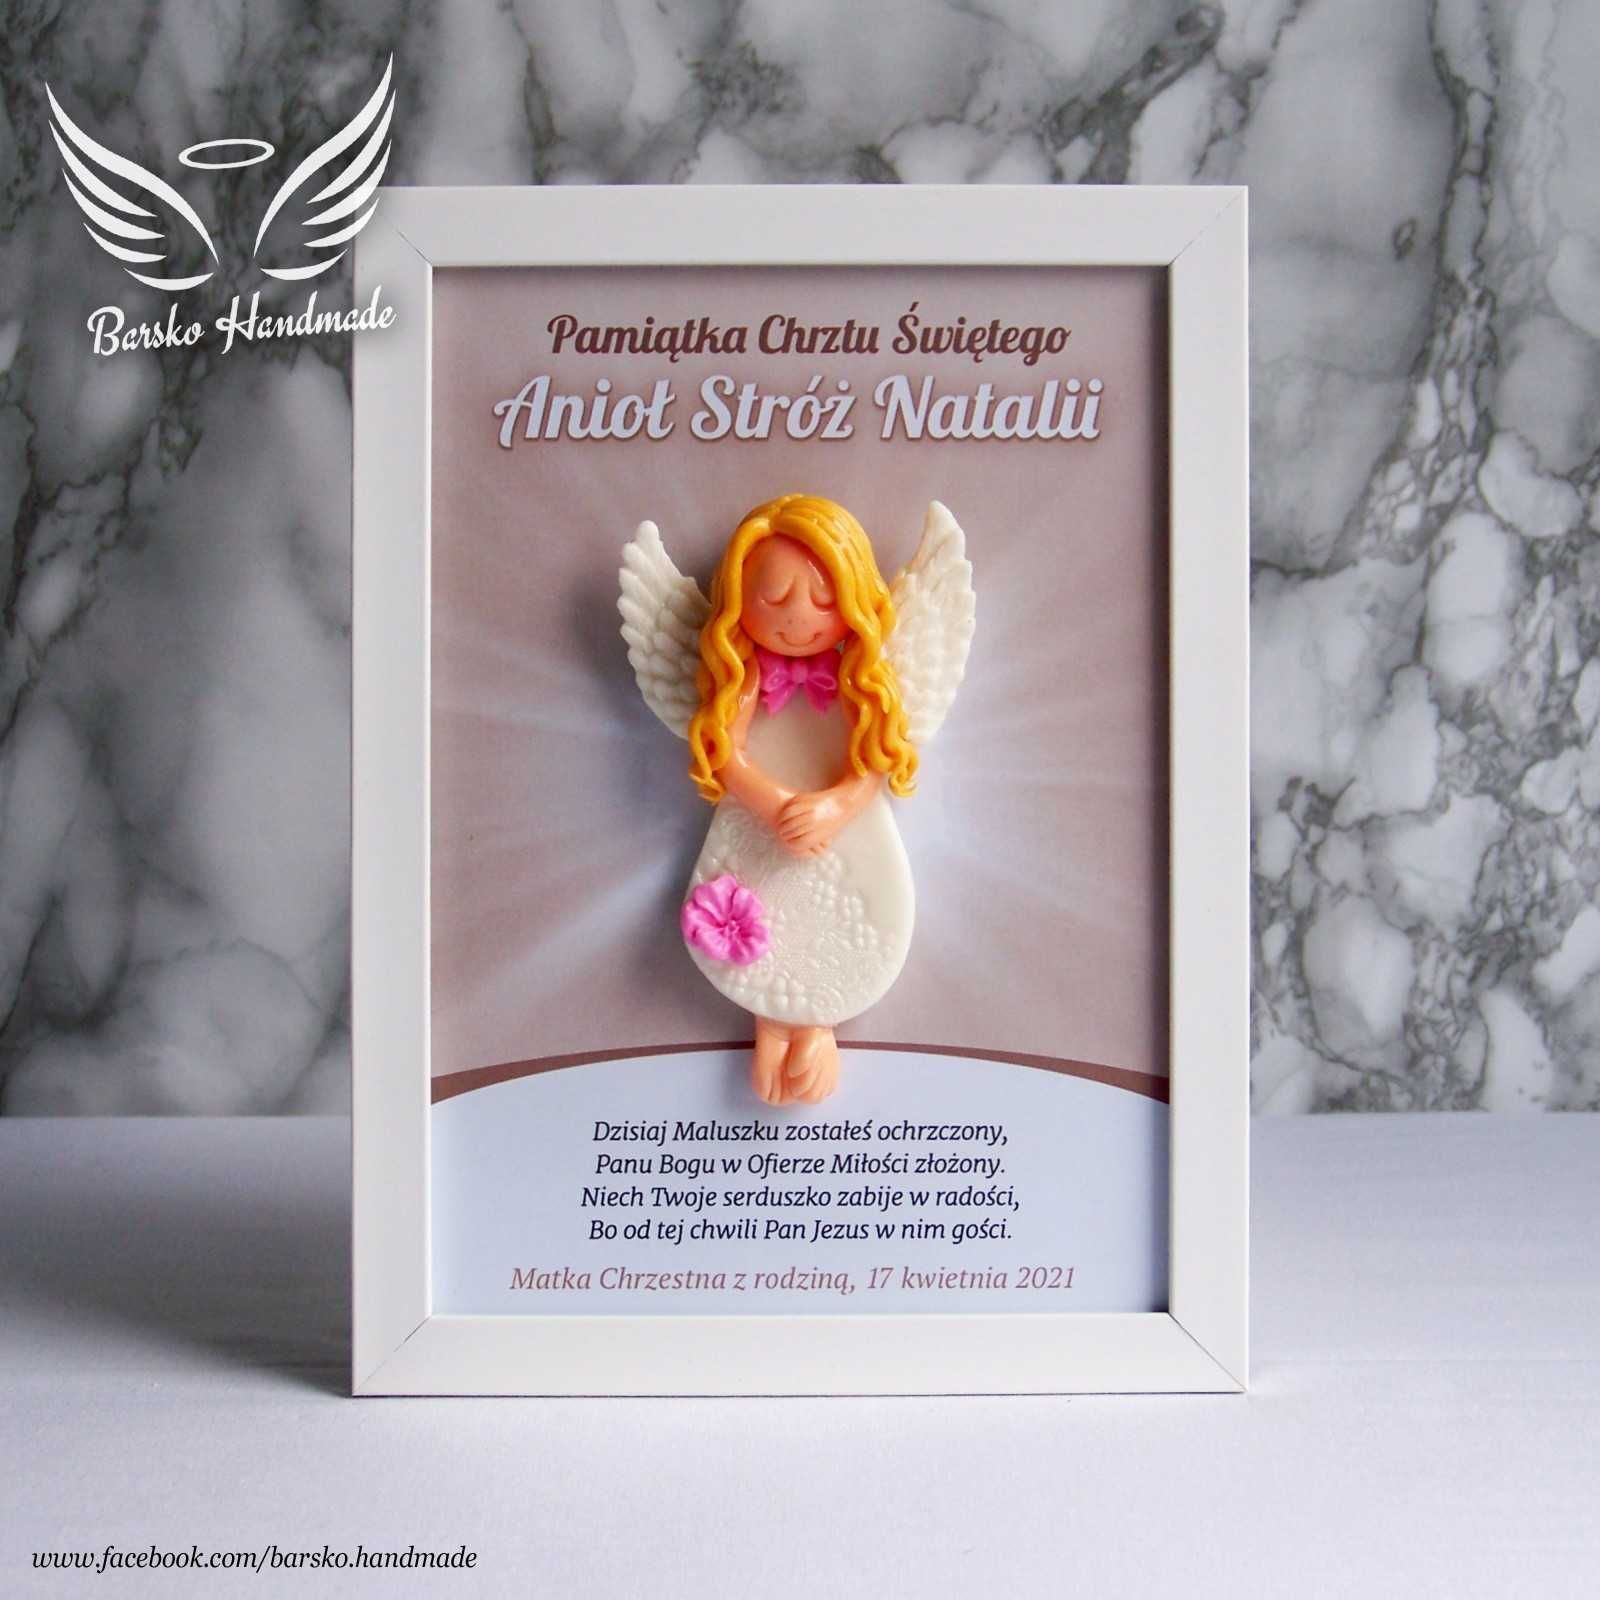 Anioł Stróż z porcelany w ramce 15x21 jako Pamiątka Chrztu Świętego